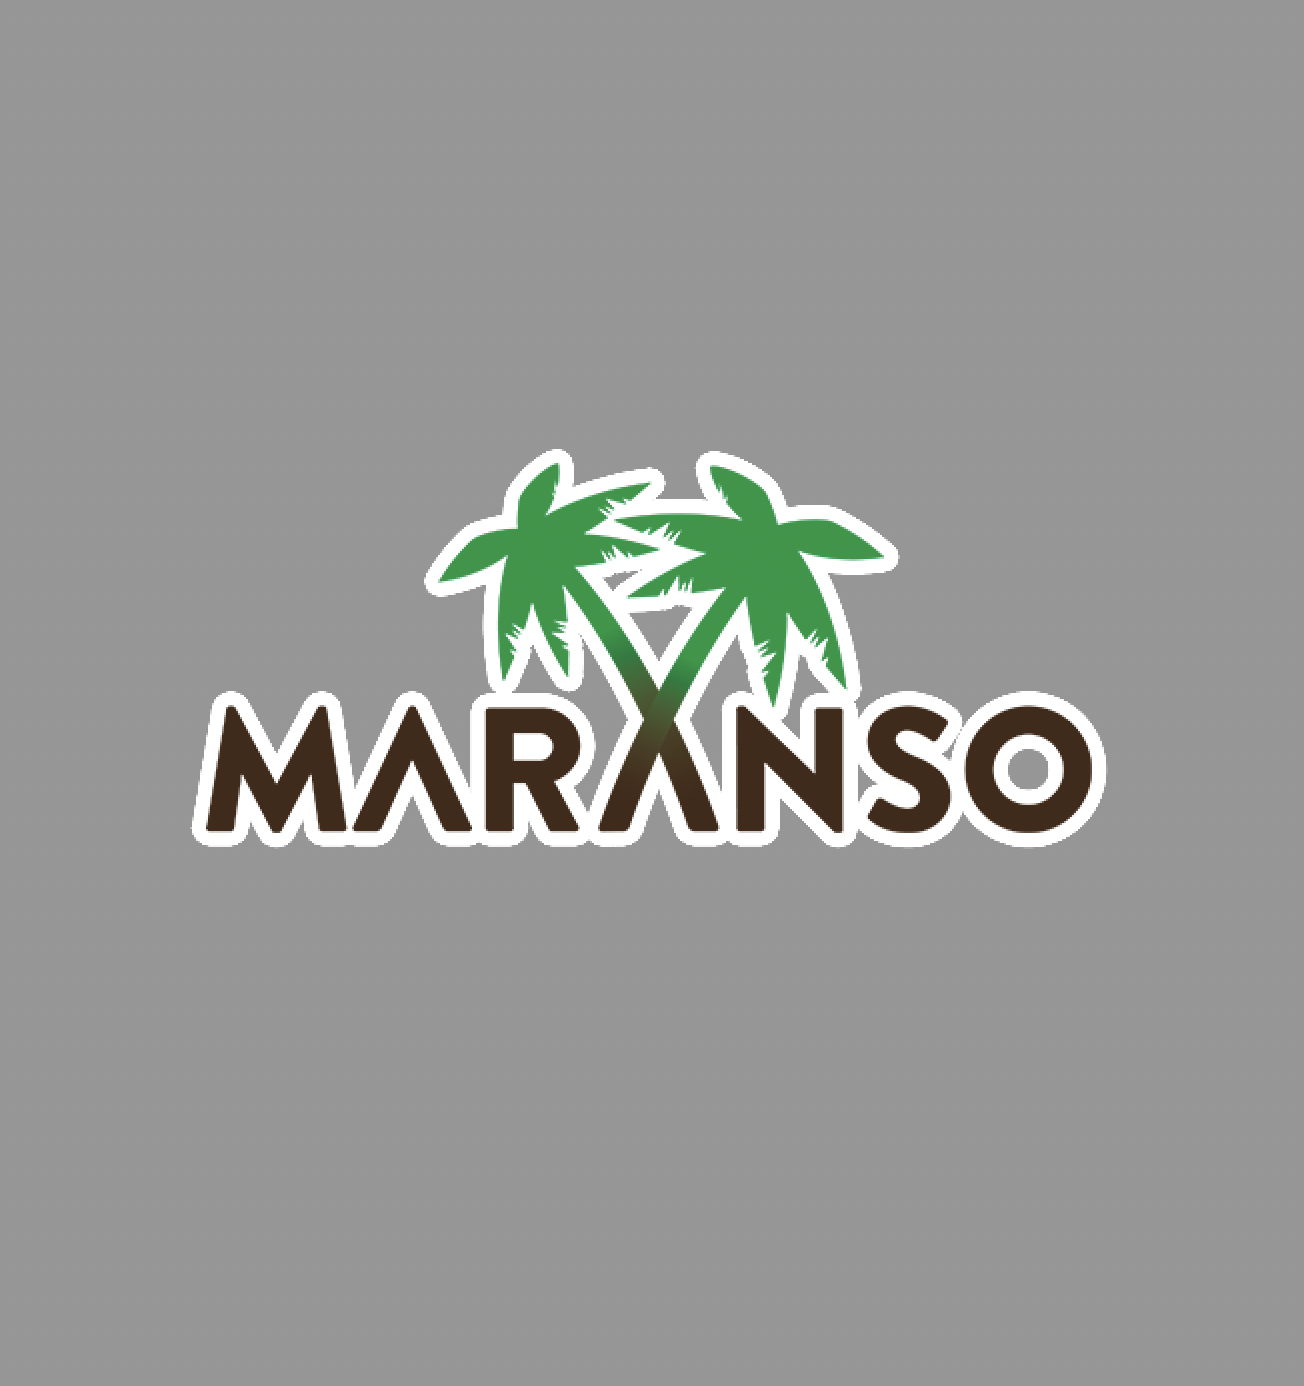 Maranso